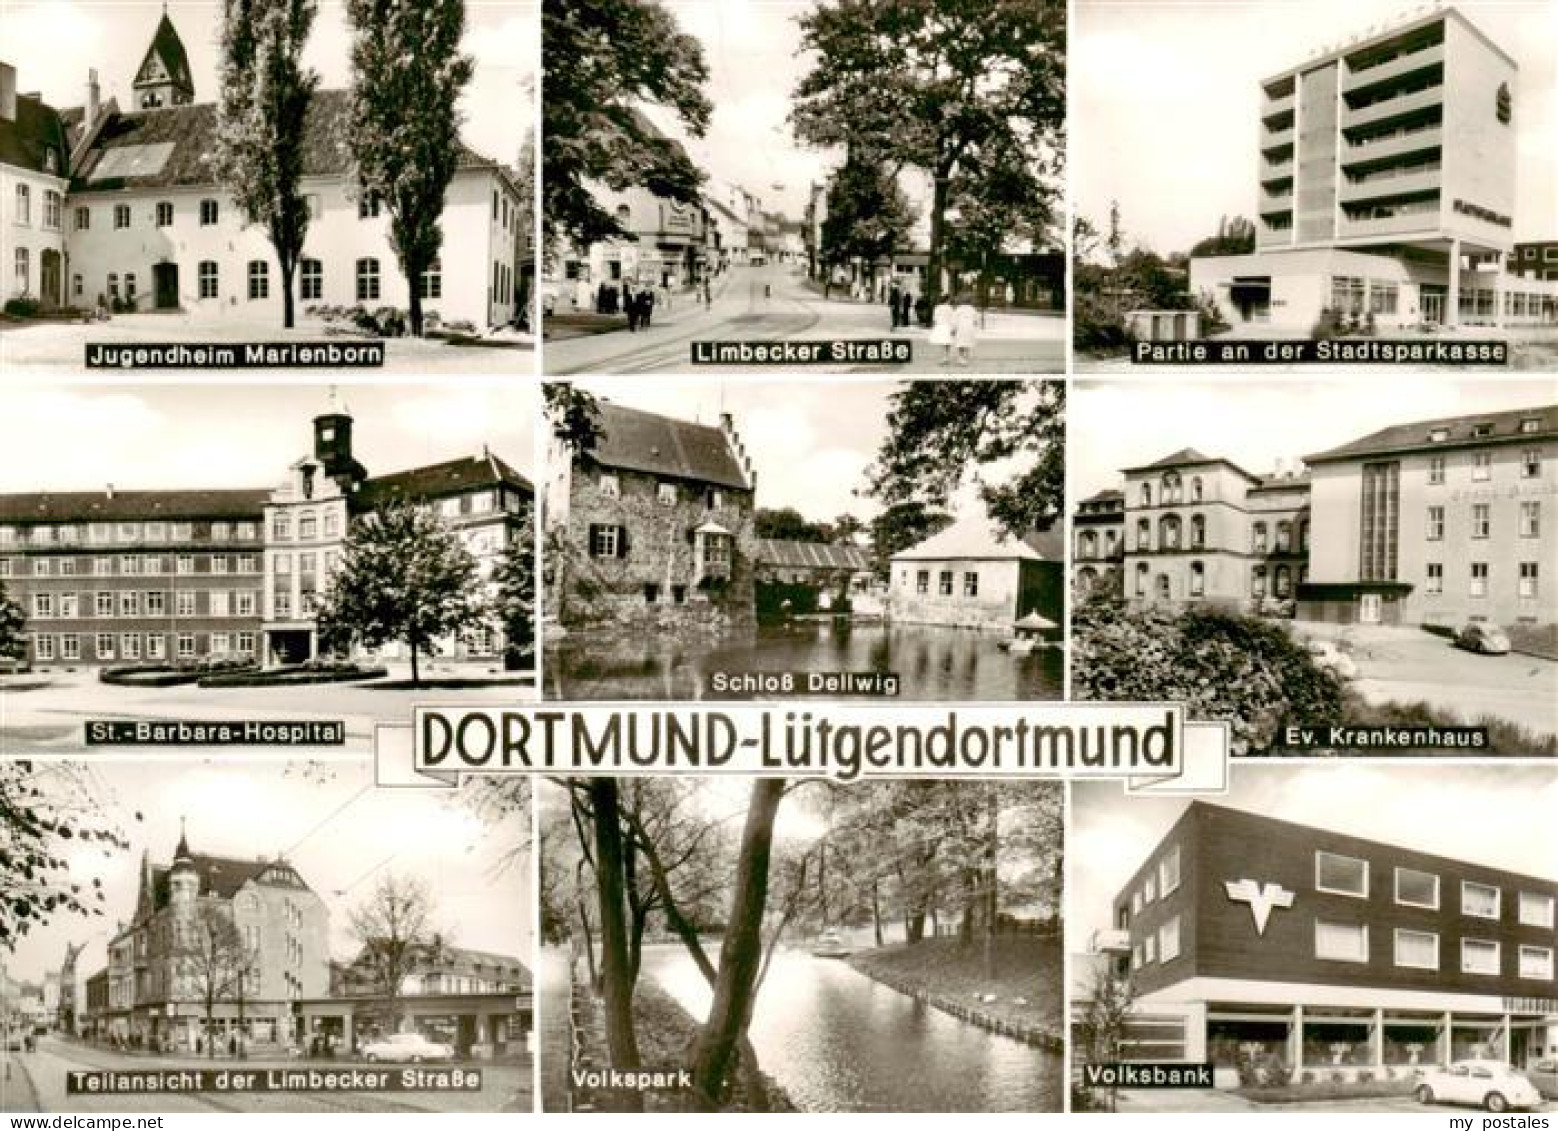 73895326 Luetgendortmund Dortmund Jugendheim Marienborn Limbecker Strasse Stadts - Dortmund